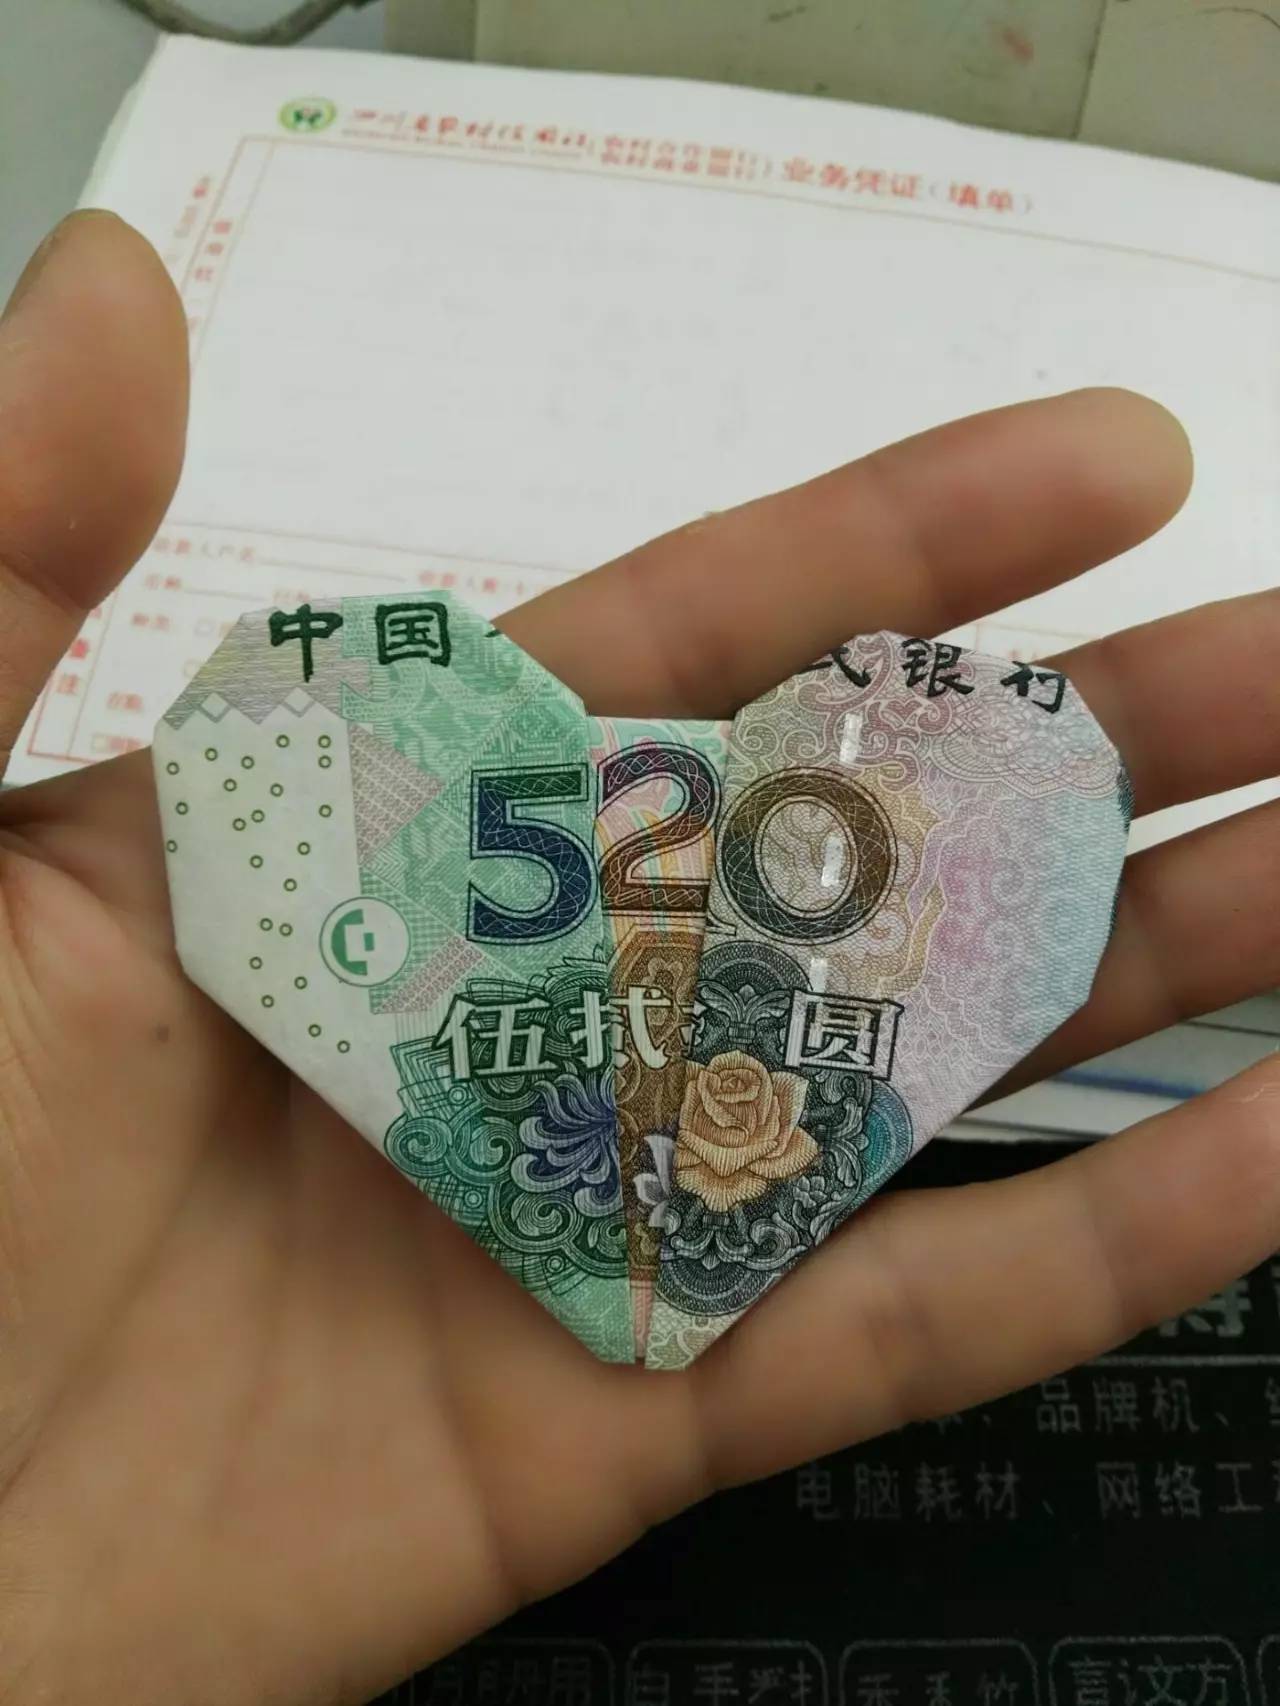 【会长推荐】人民币520心形折纸手工折法教程图解!包